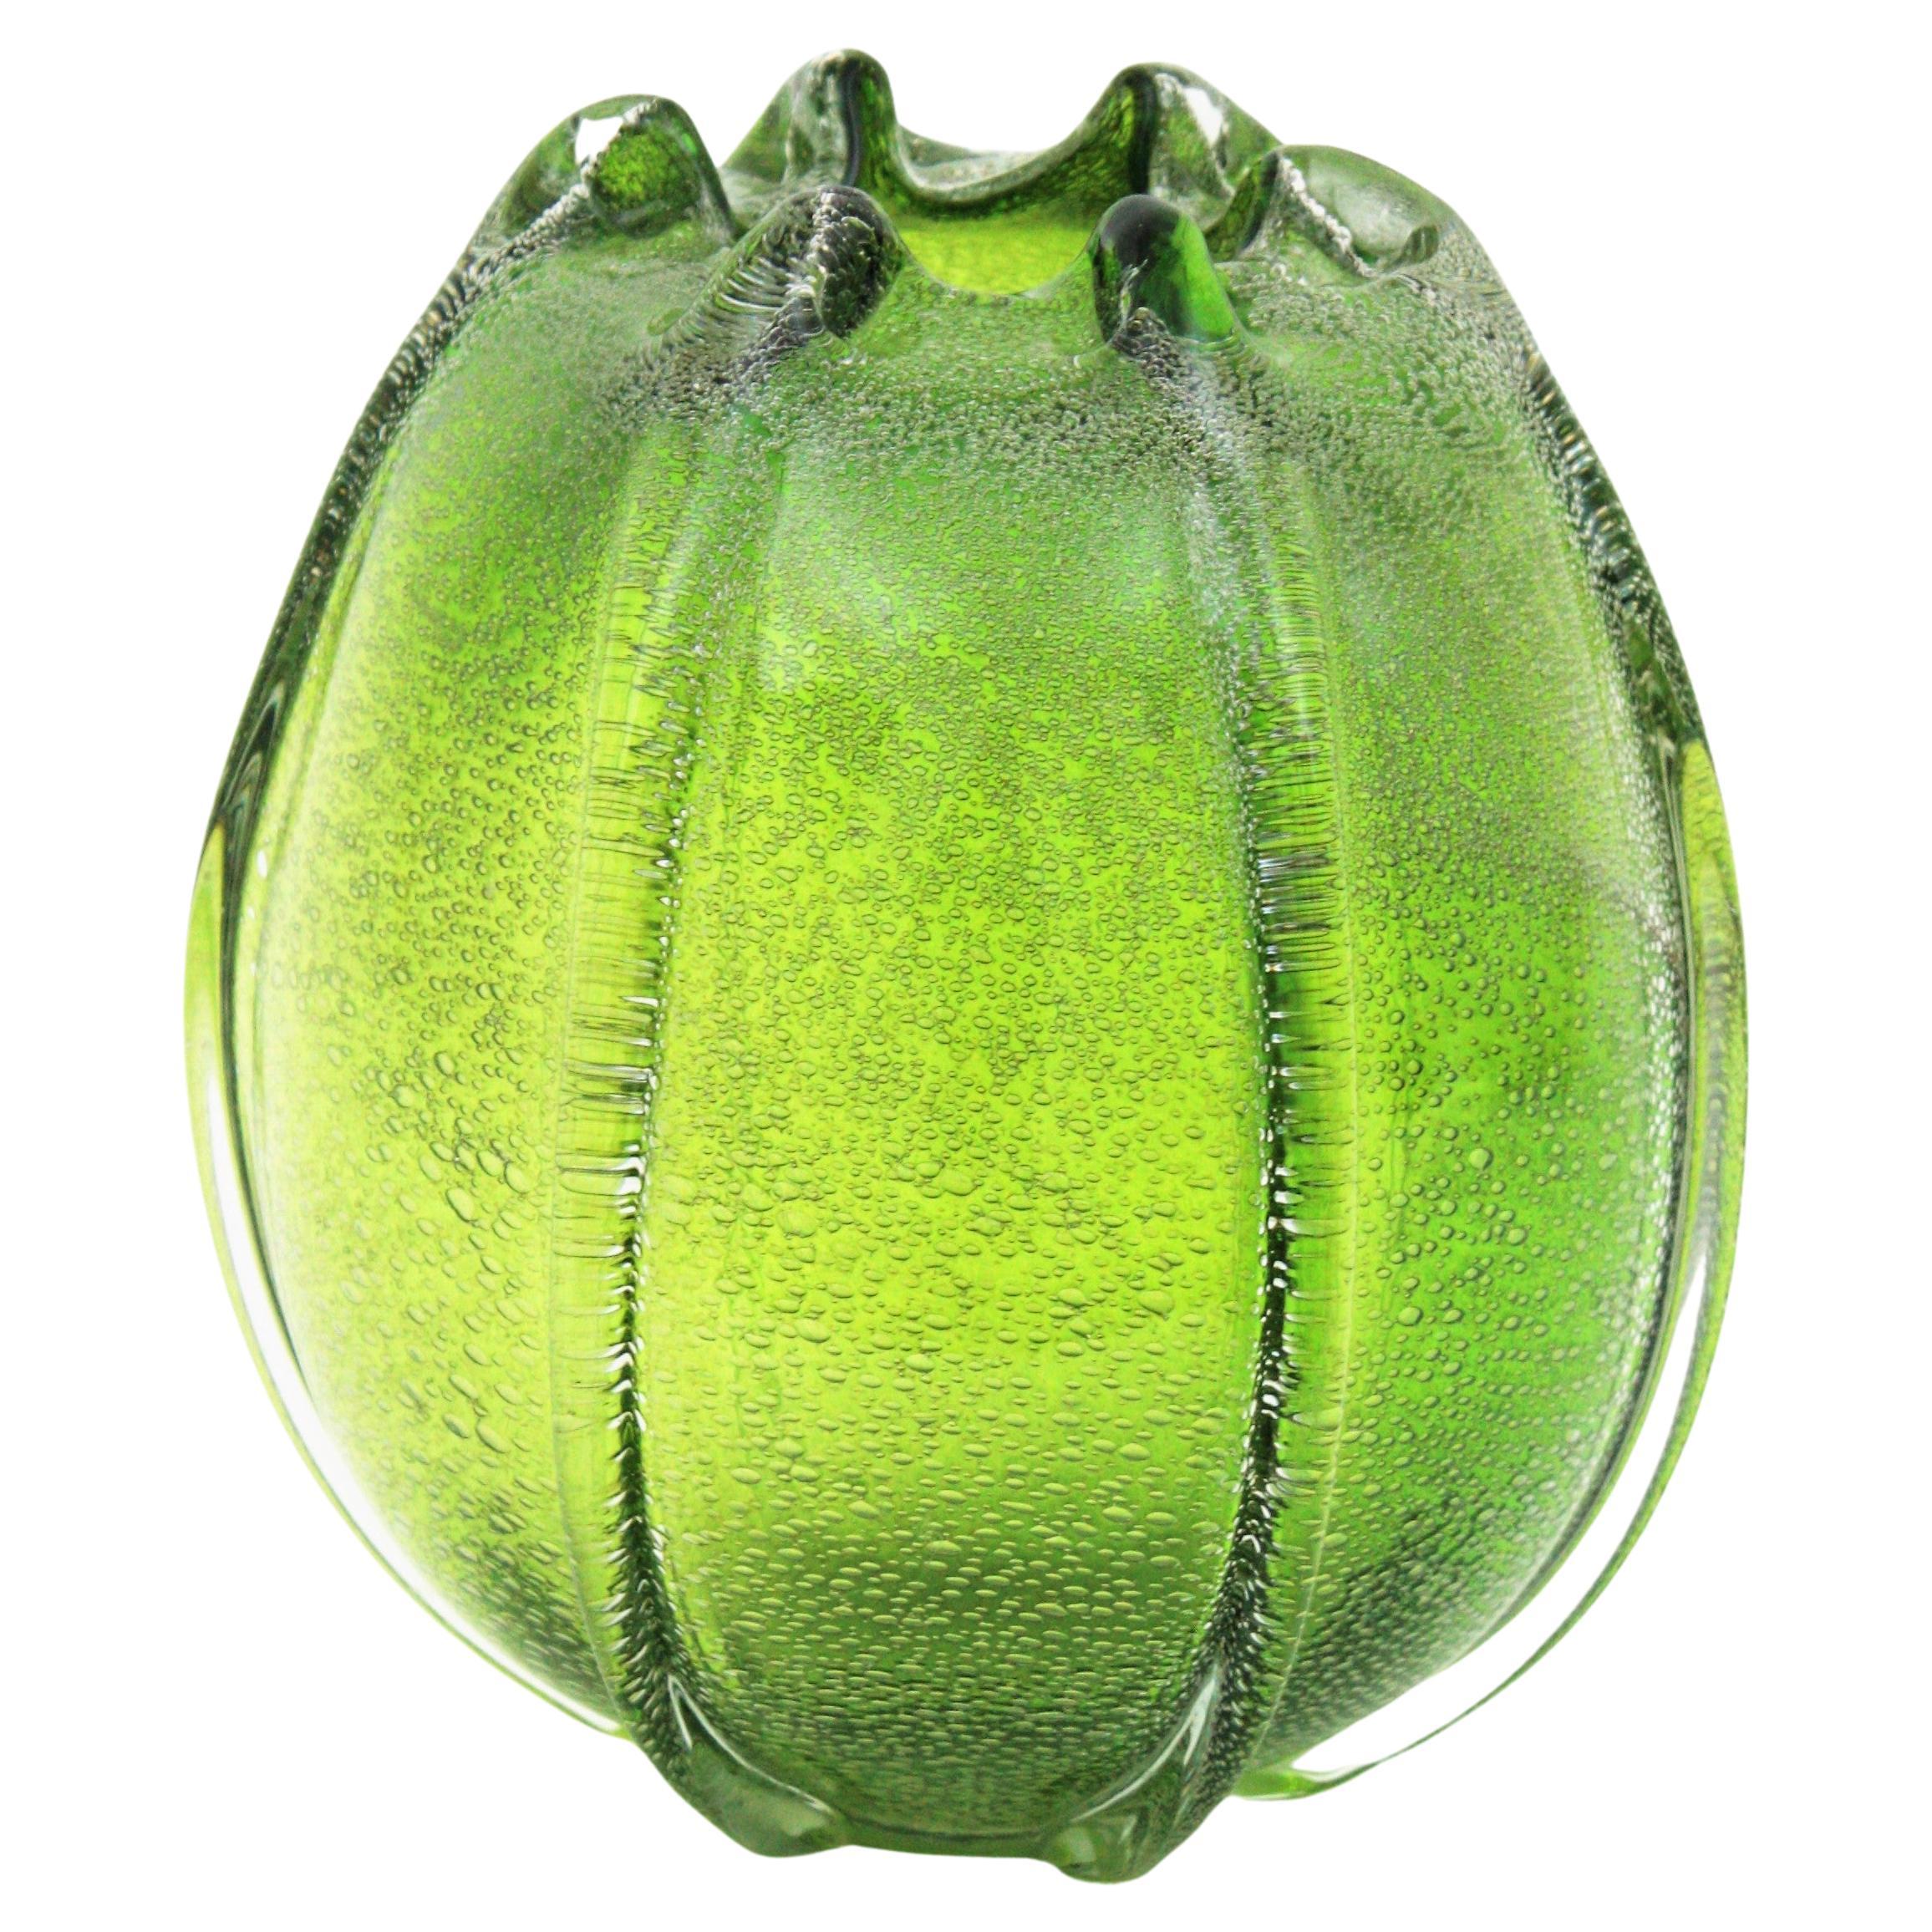 Vase Pulegoso vert en verre soufflé de Murano, Italie, années 1950.
Exquis et sculptural vase Archimede Seguso pulegoso en verre de Murano soufflé à la bouche, de forme ovoïde, avec des nervures en verre sortant de la base et la technique du